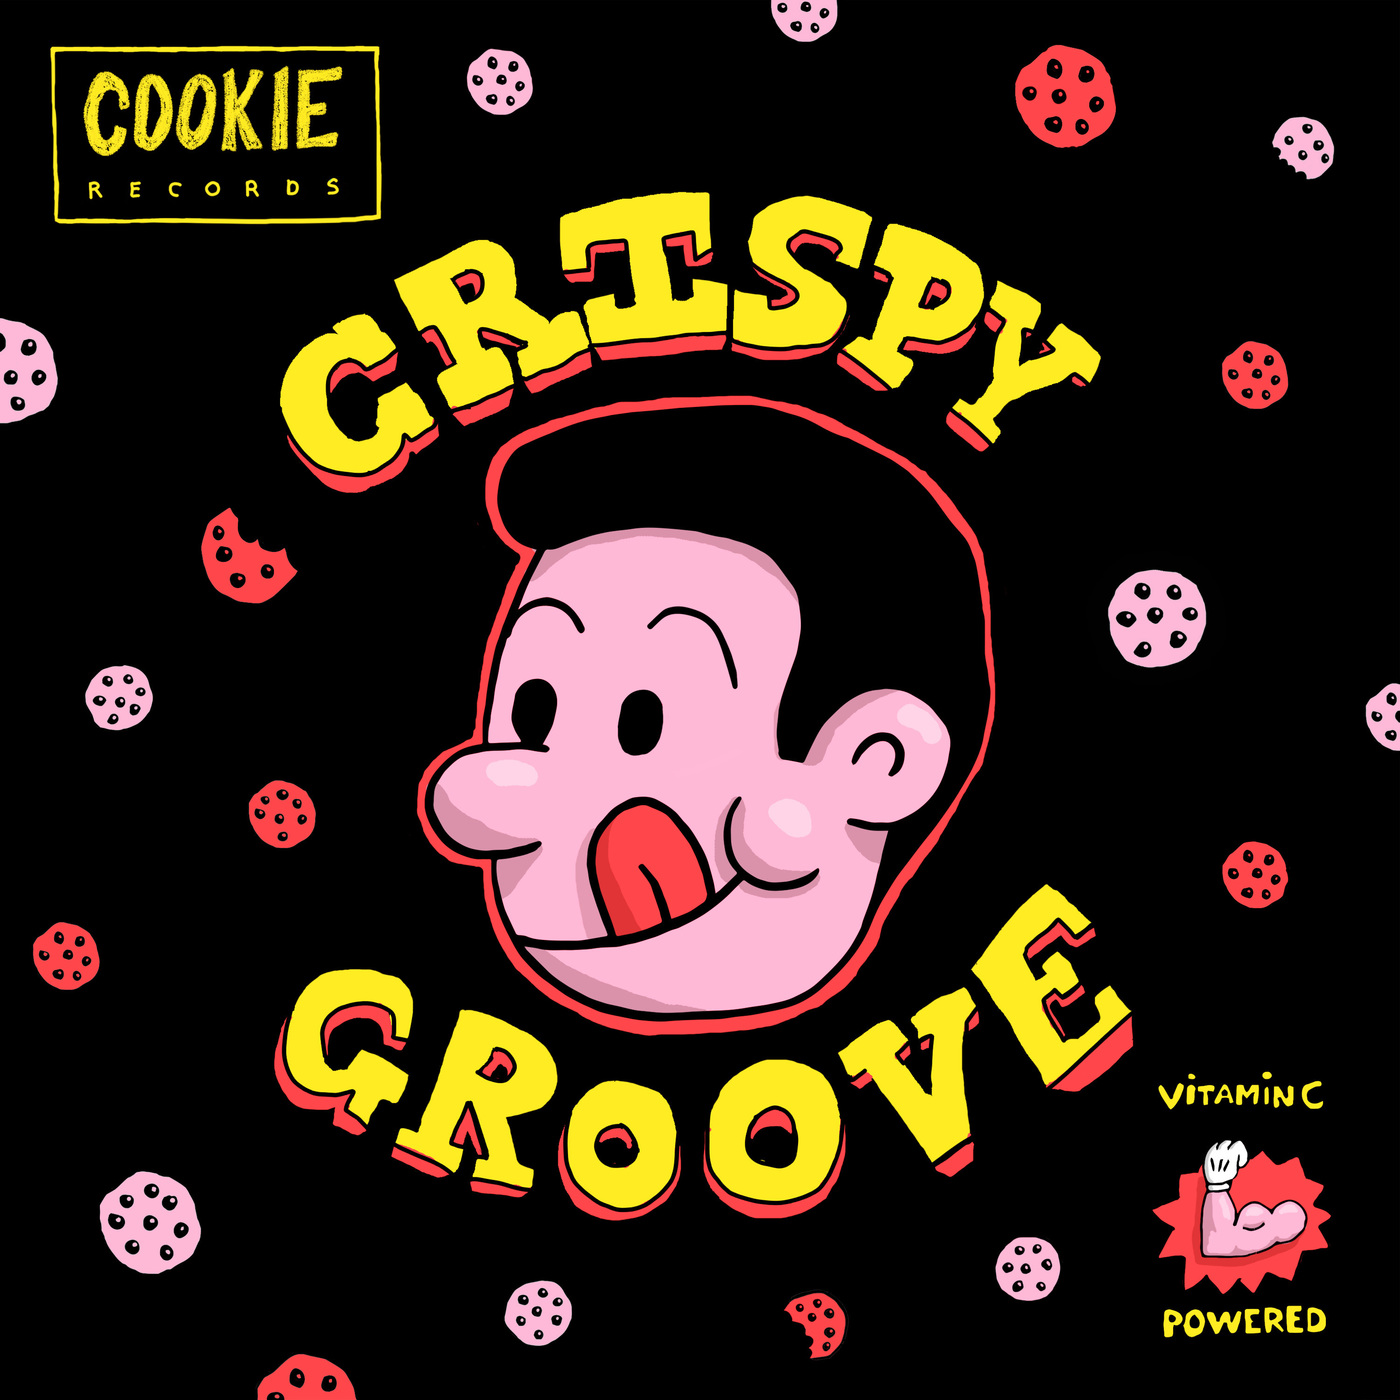 VA - Crispy Groove / Cookie Records